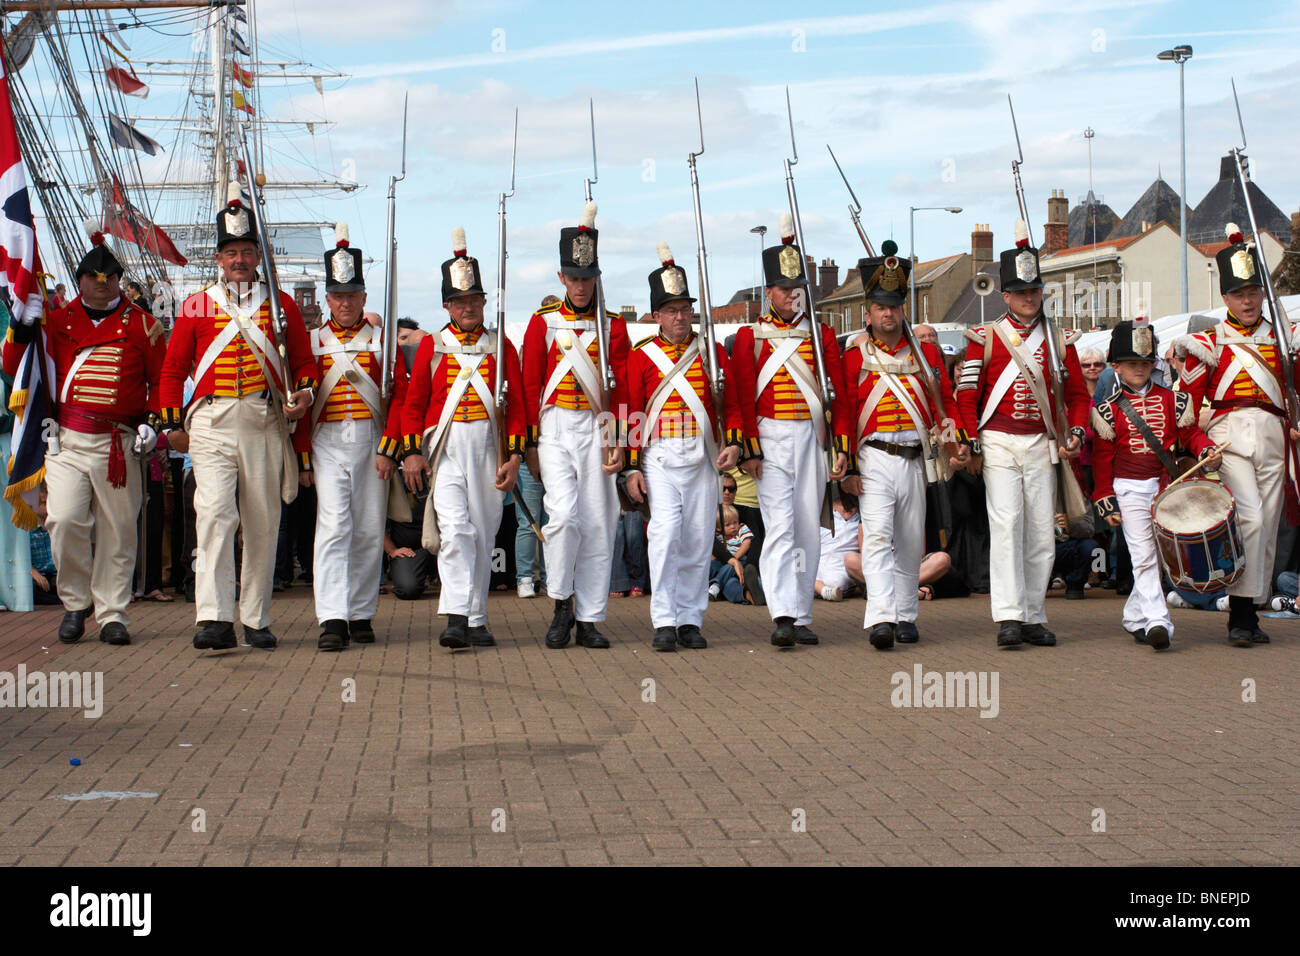 Los soldados marchando,maritime,coloridos uniformes con la bandera británica Foto de stock